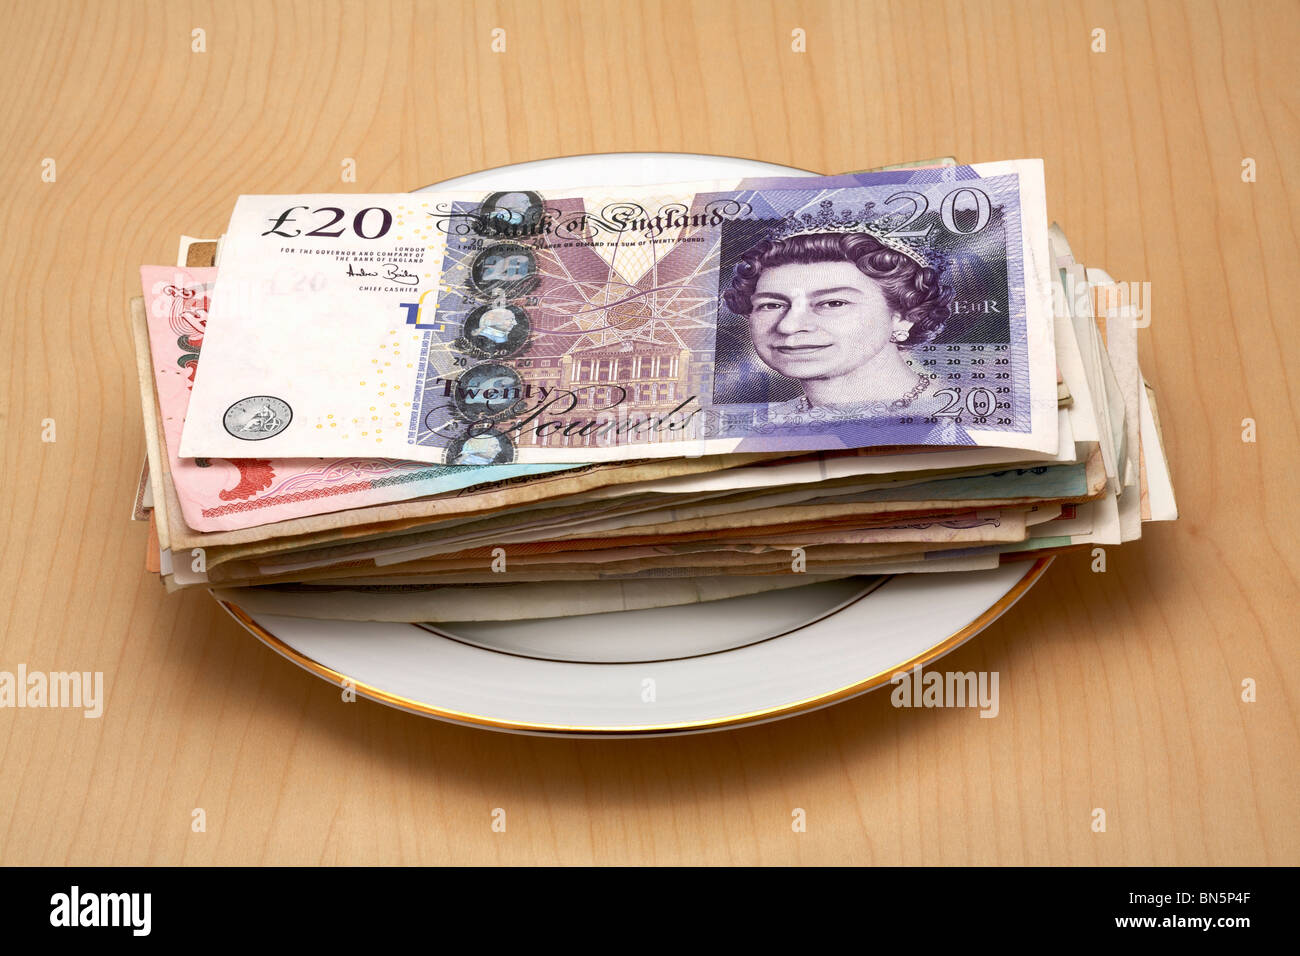 Porzellanteller mit UK £20-Pfund-Note drauf legen Stockfoto